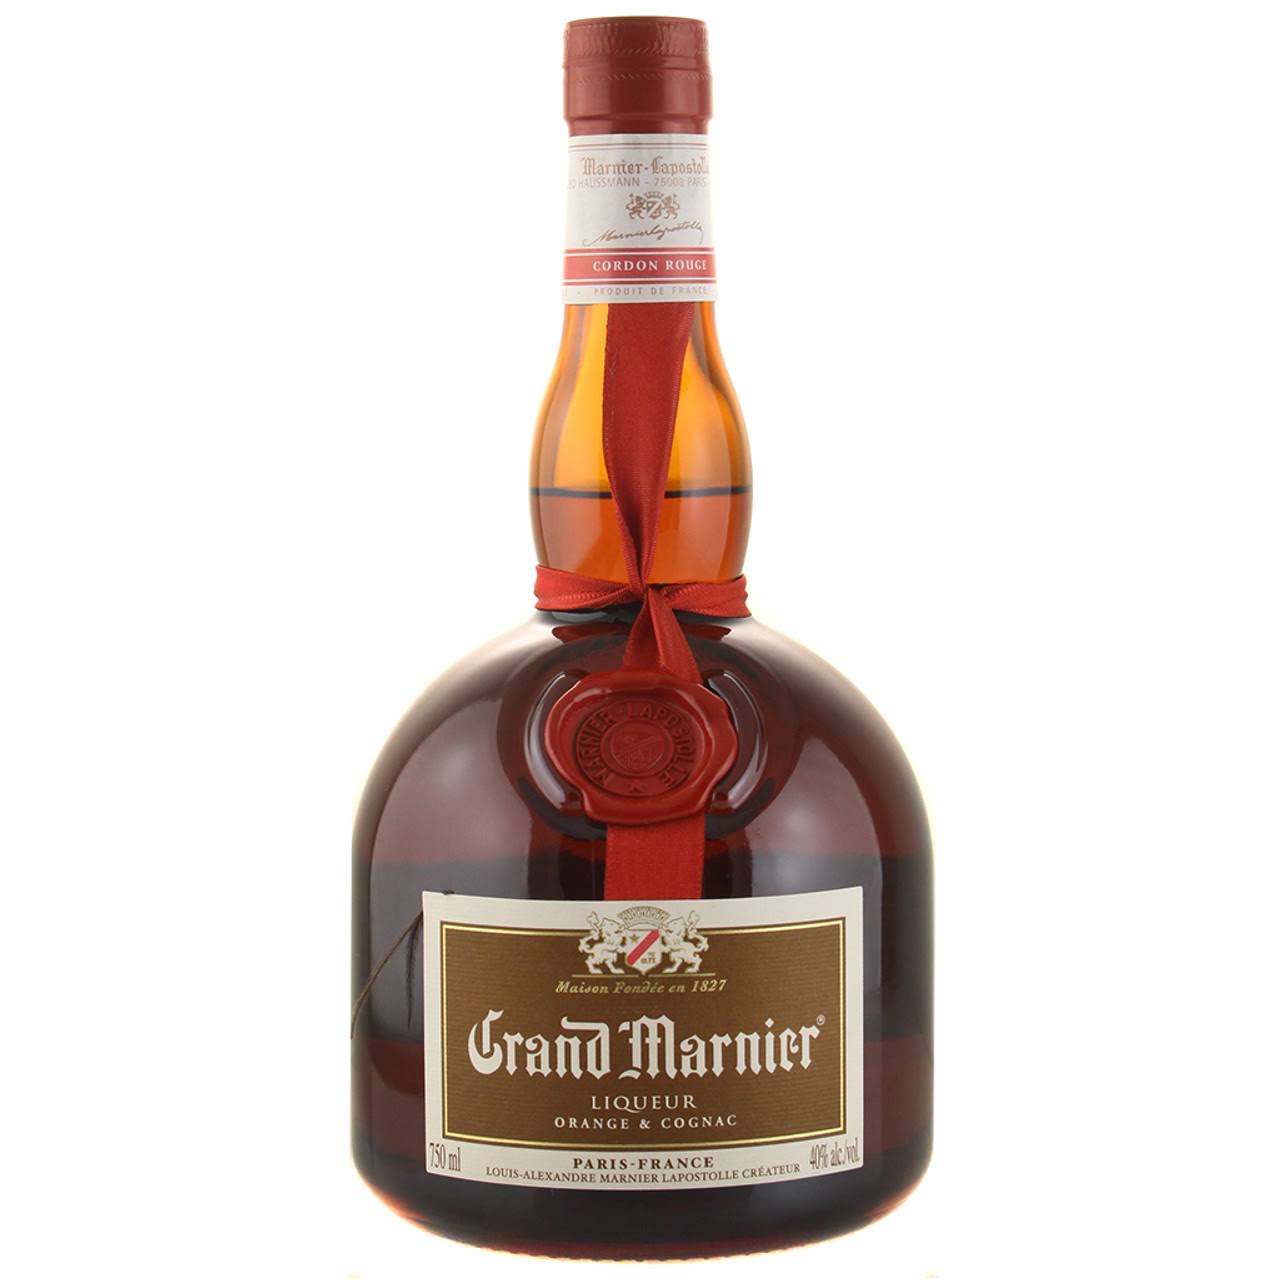 Grand Marnier Liqueur, Cognac & Orange, Cordon Rouge - 750 ml